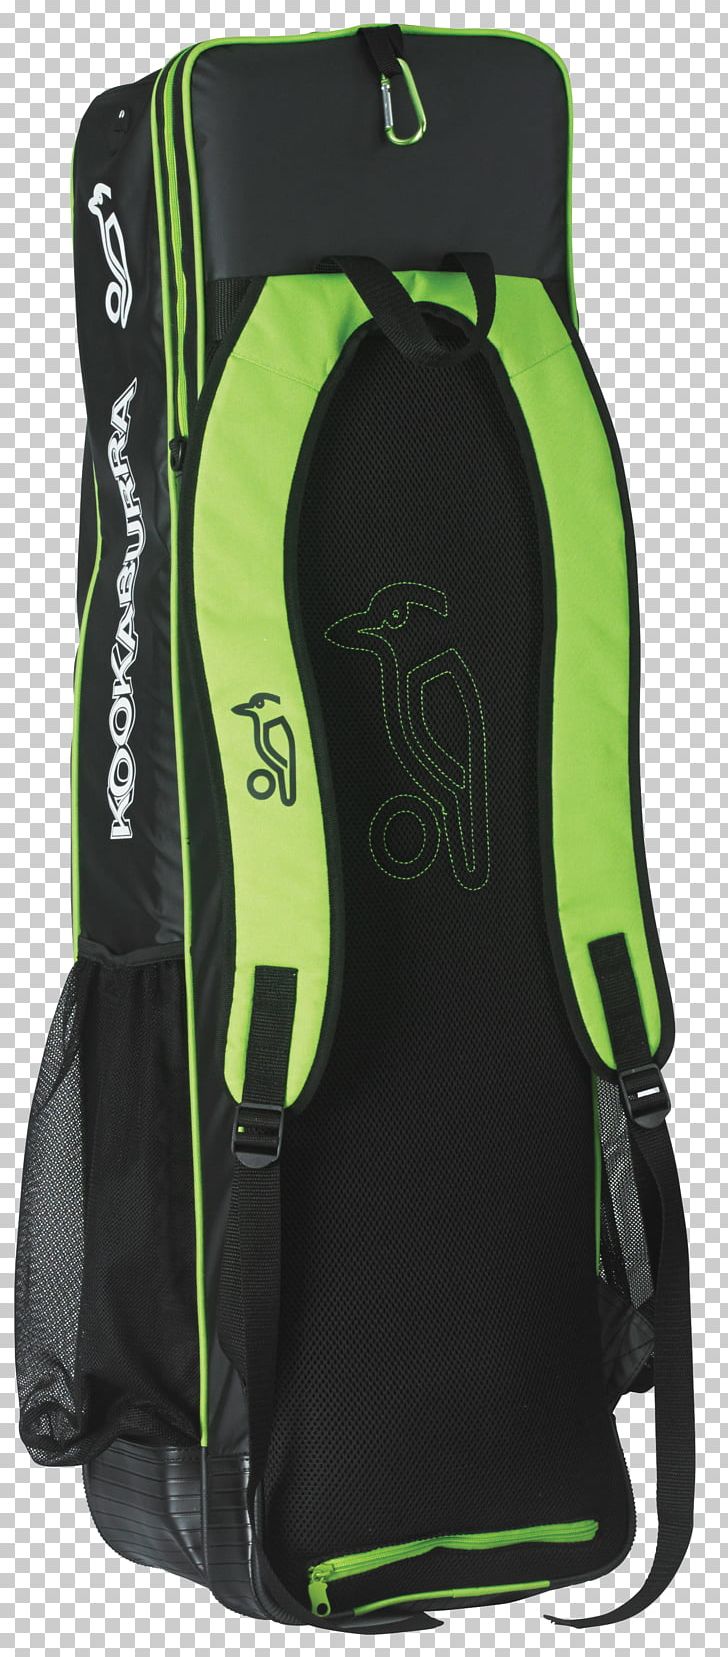 Golf Hockey Sticks Backpack PNG, Clipart, Backpack, Bag, Biz, Black, Dried Lime Free PNG Download